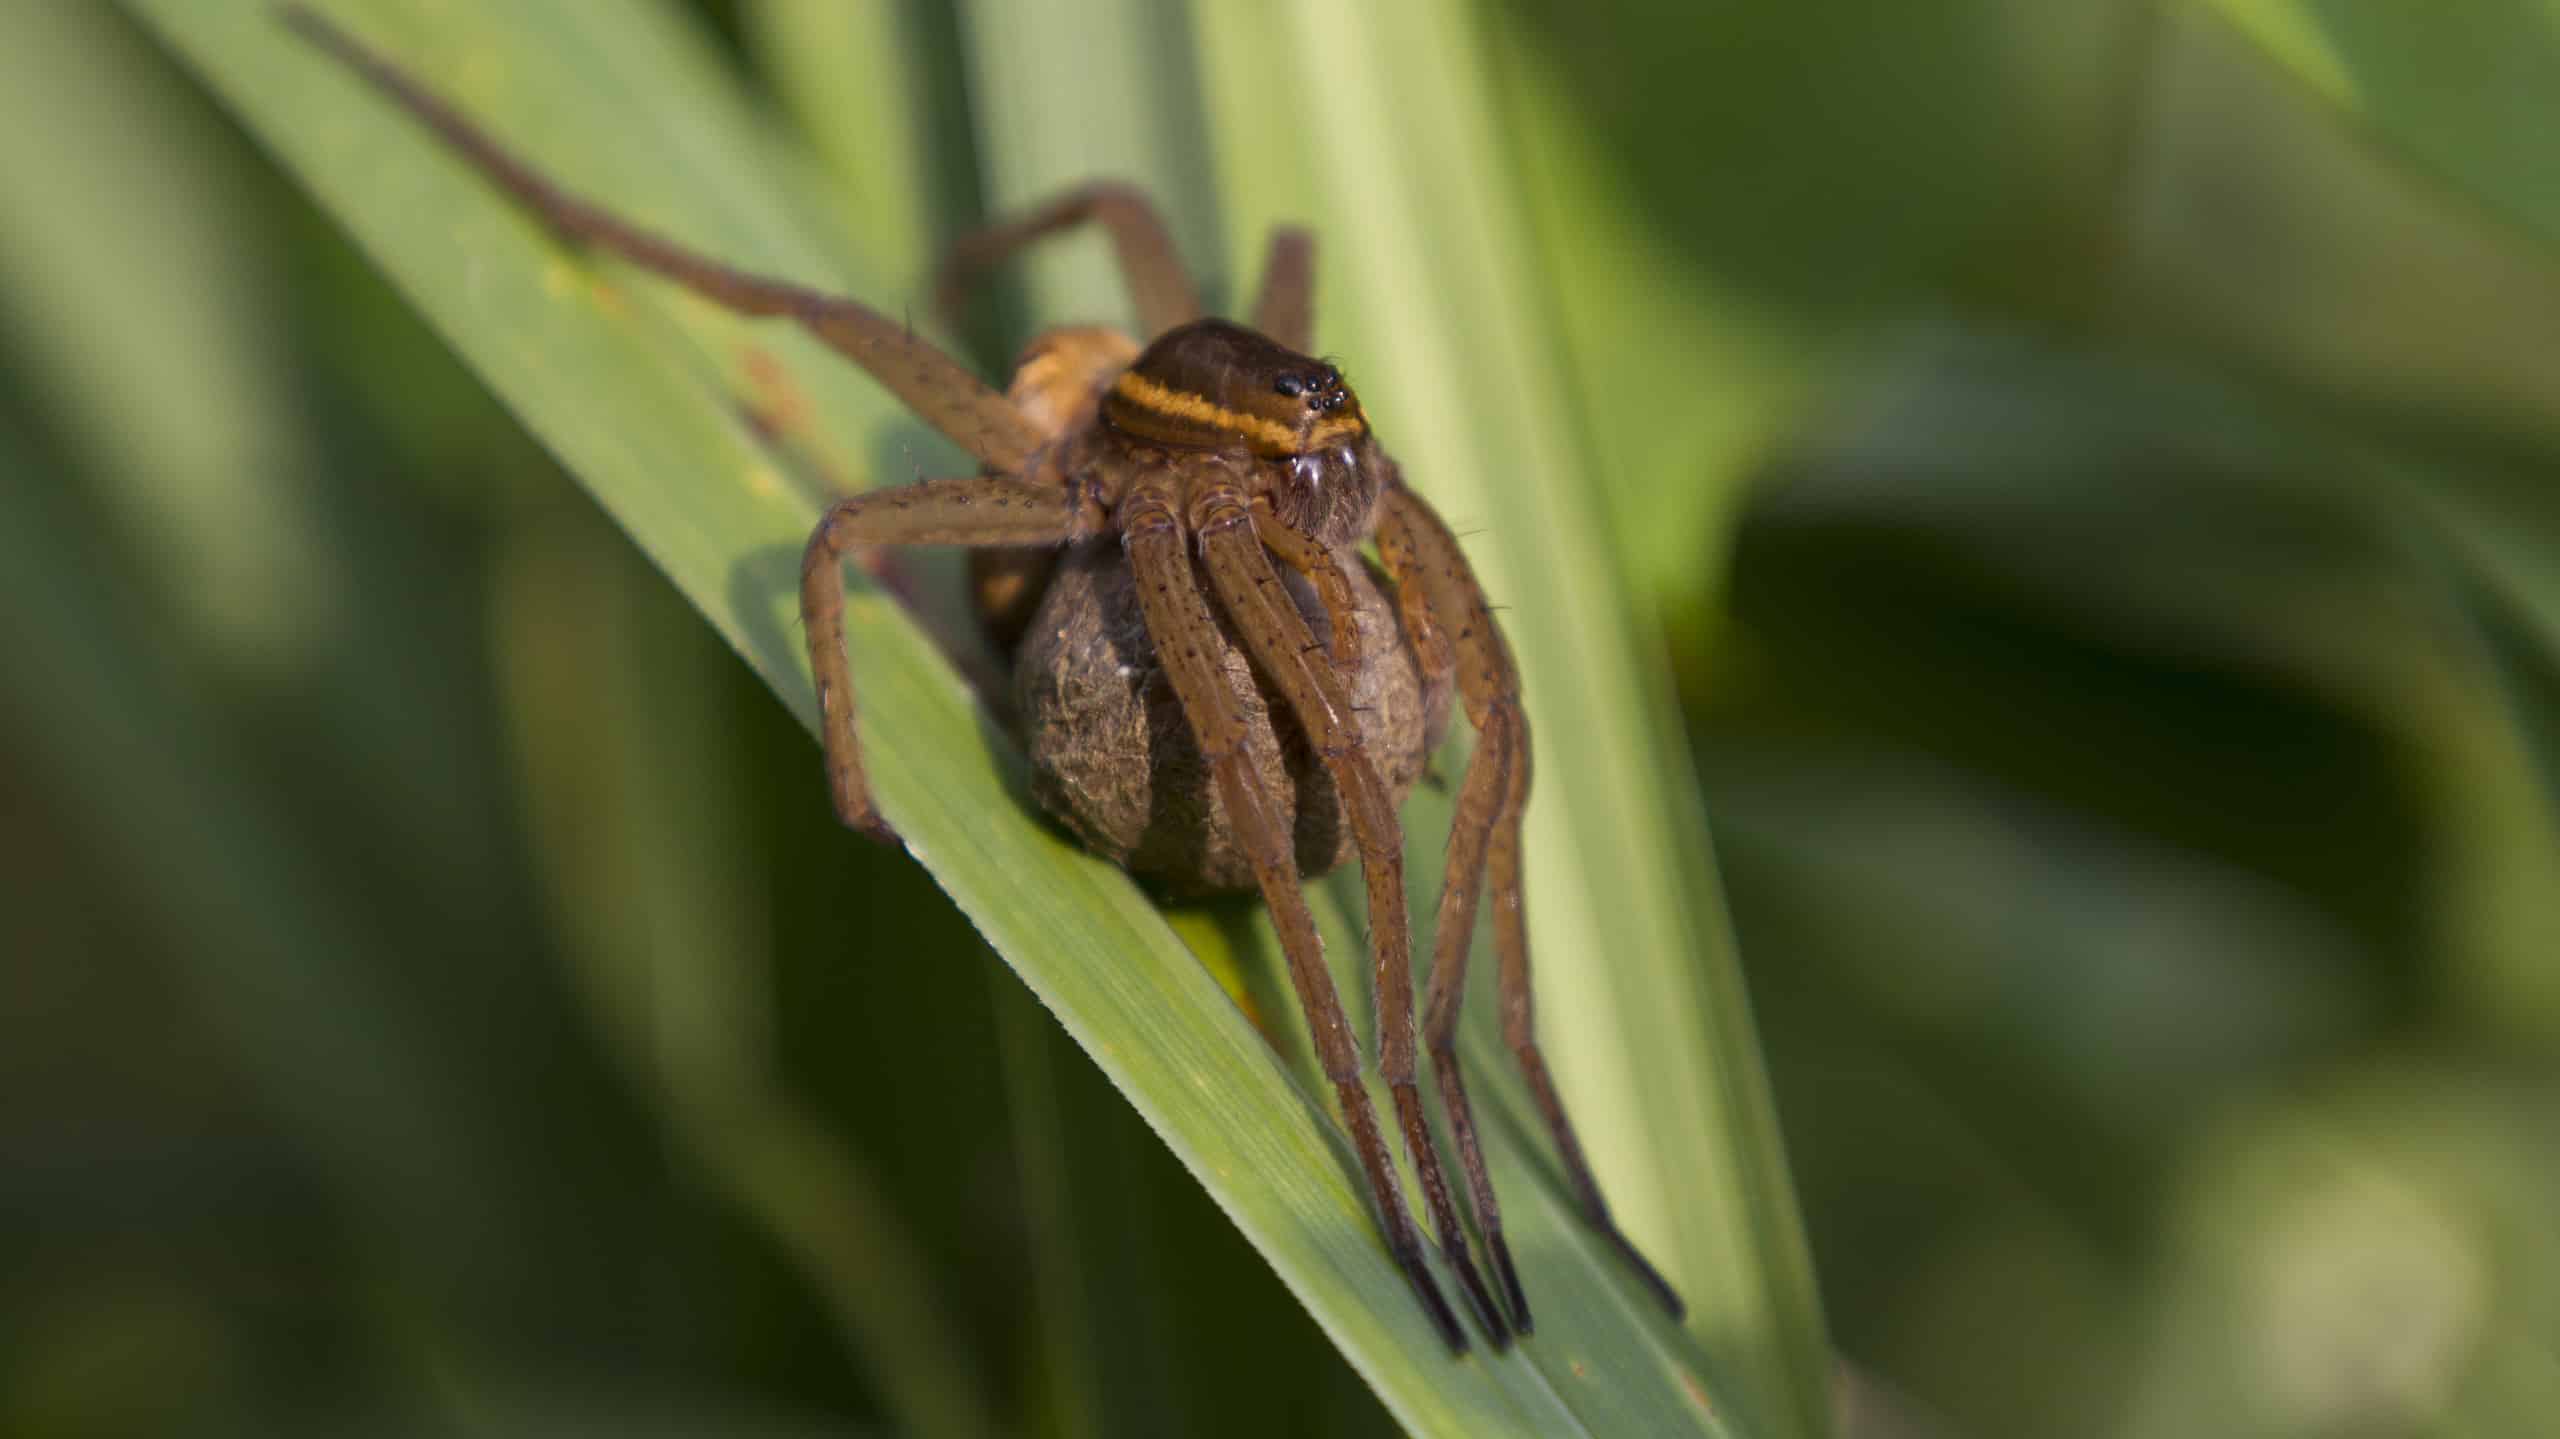 great Raft Spider (Dolomedes plantarius)